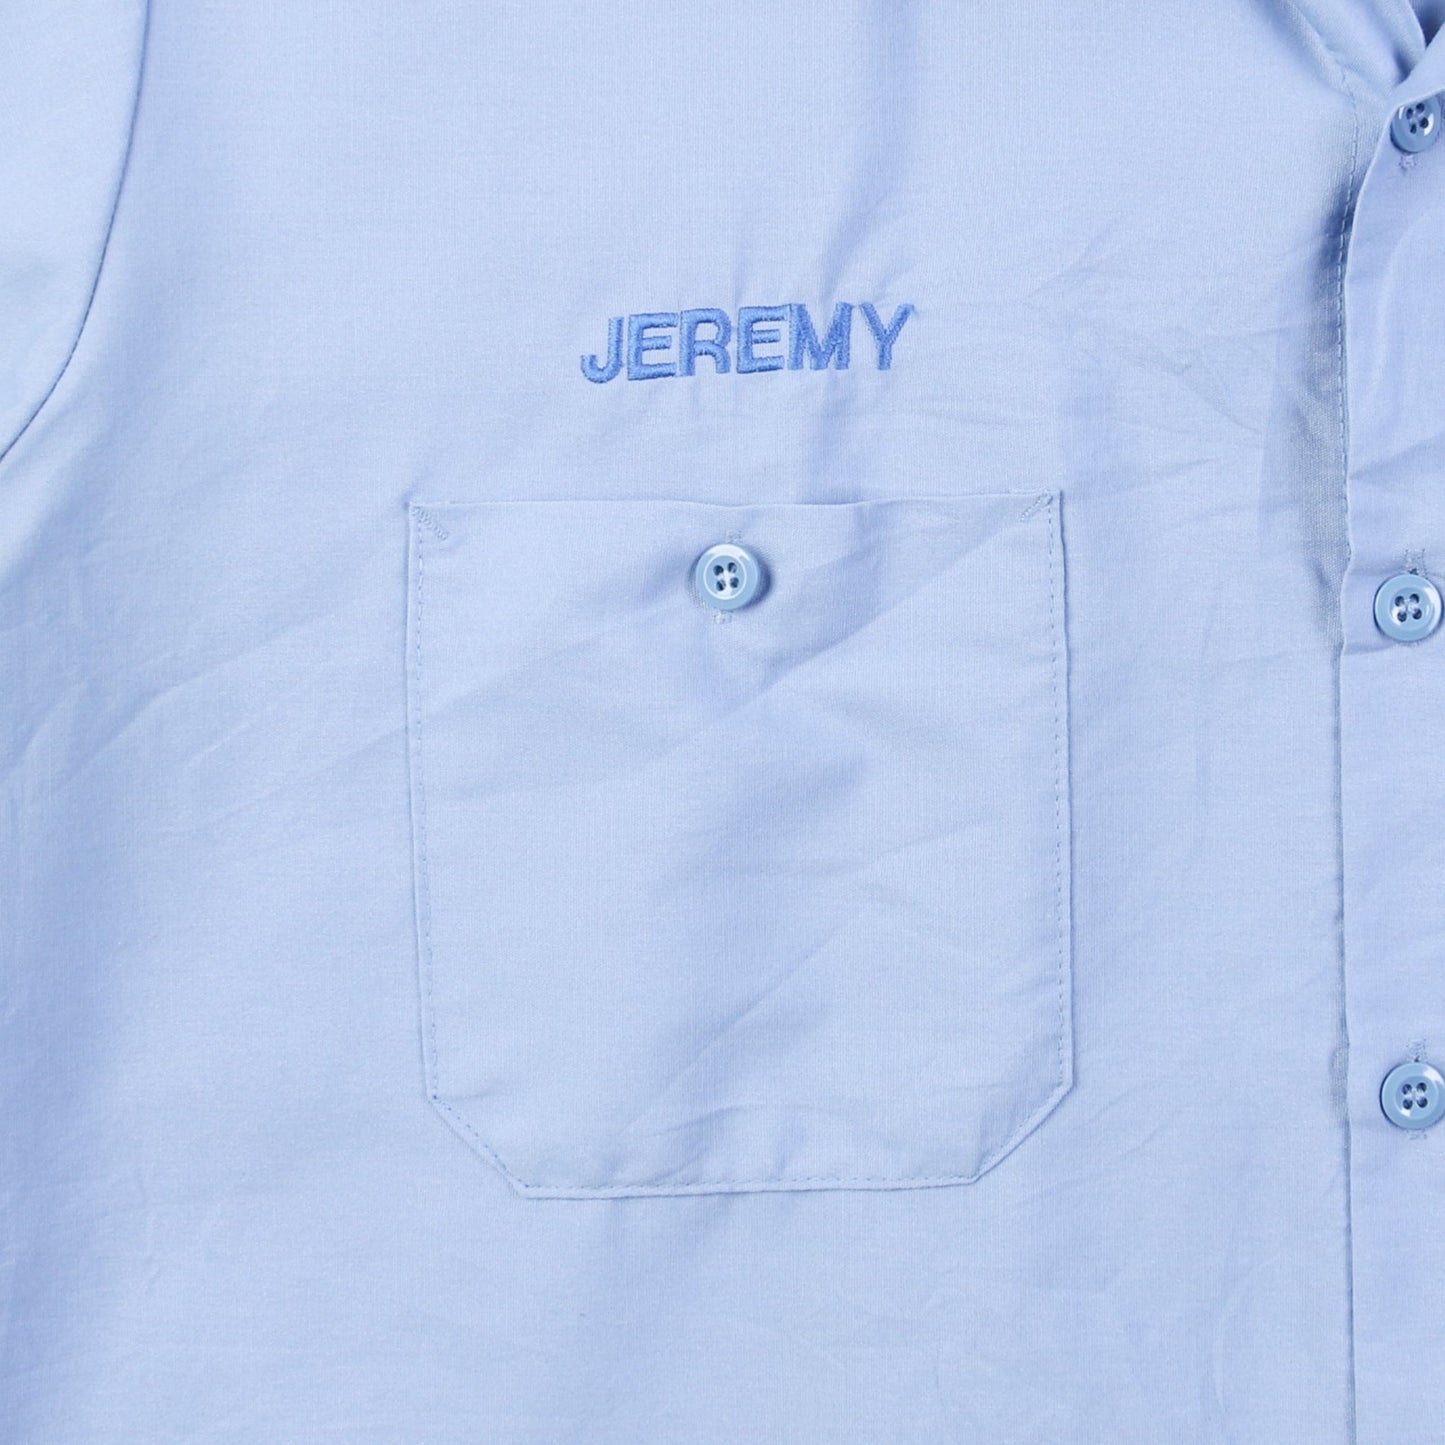 'Jeremy' Garage Work Shirt - American Madness